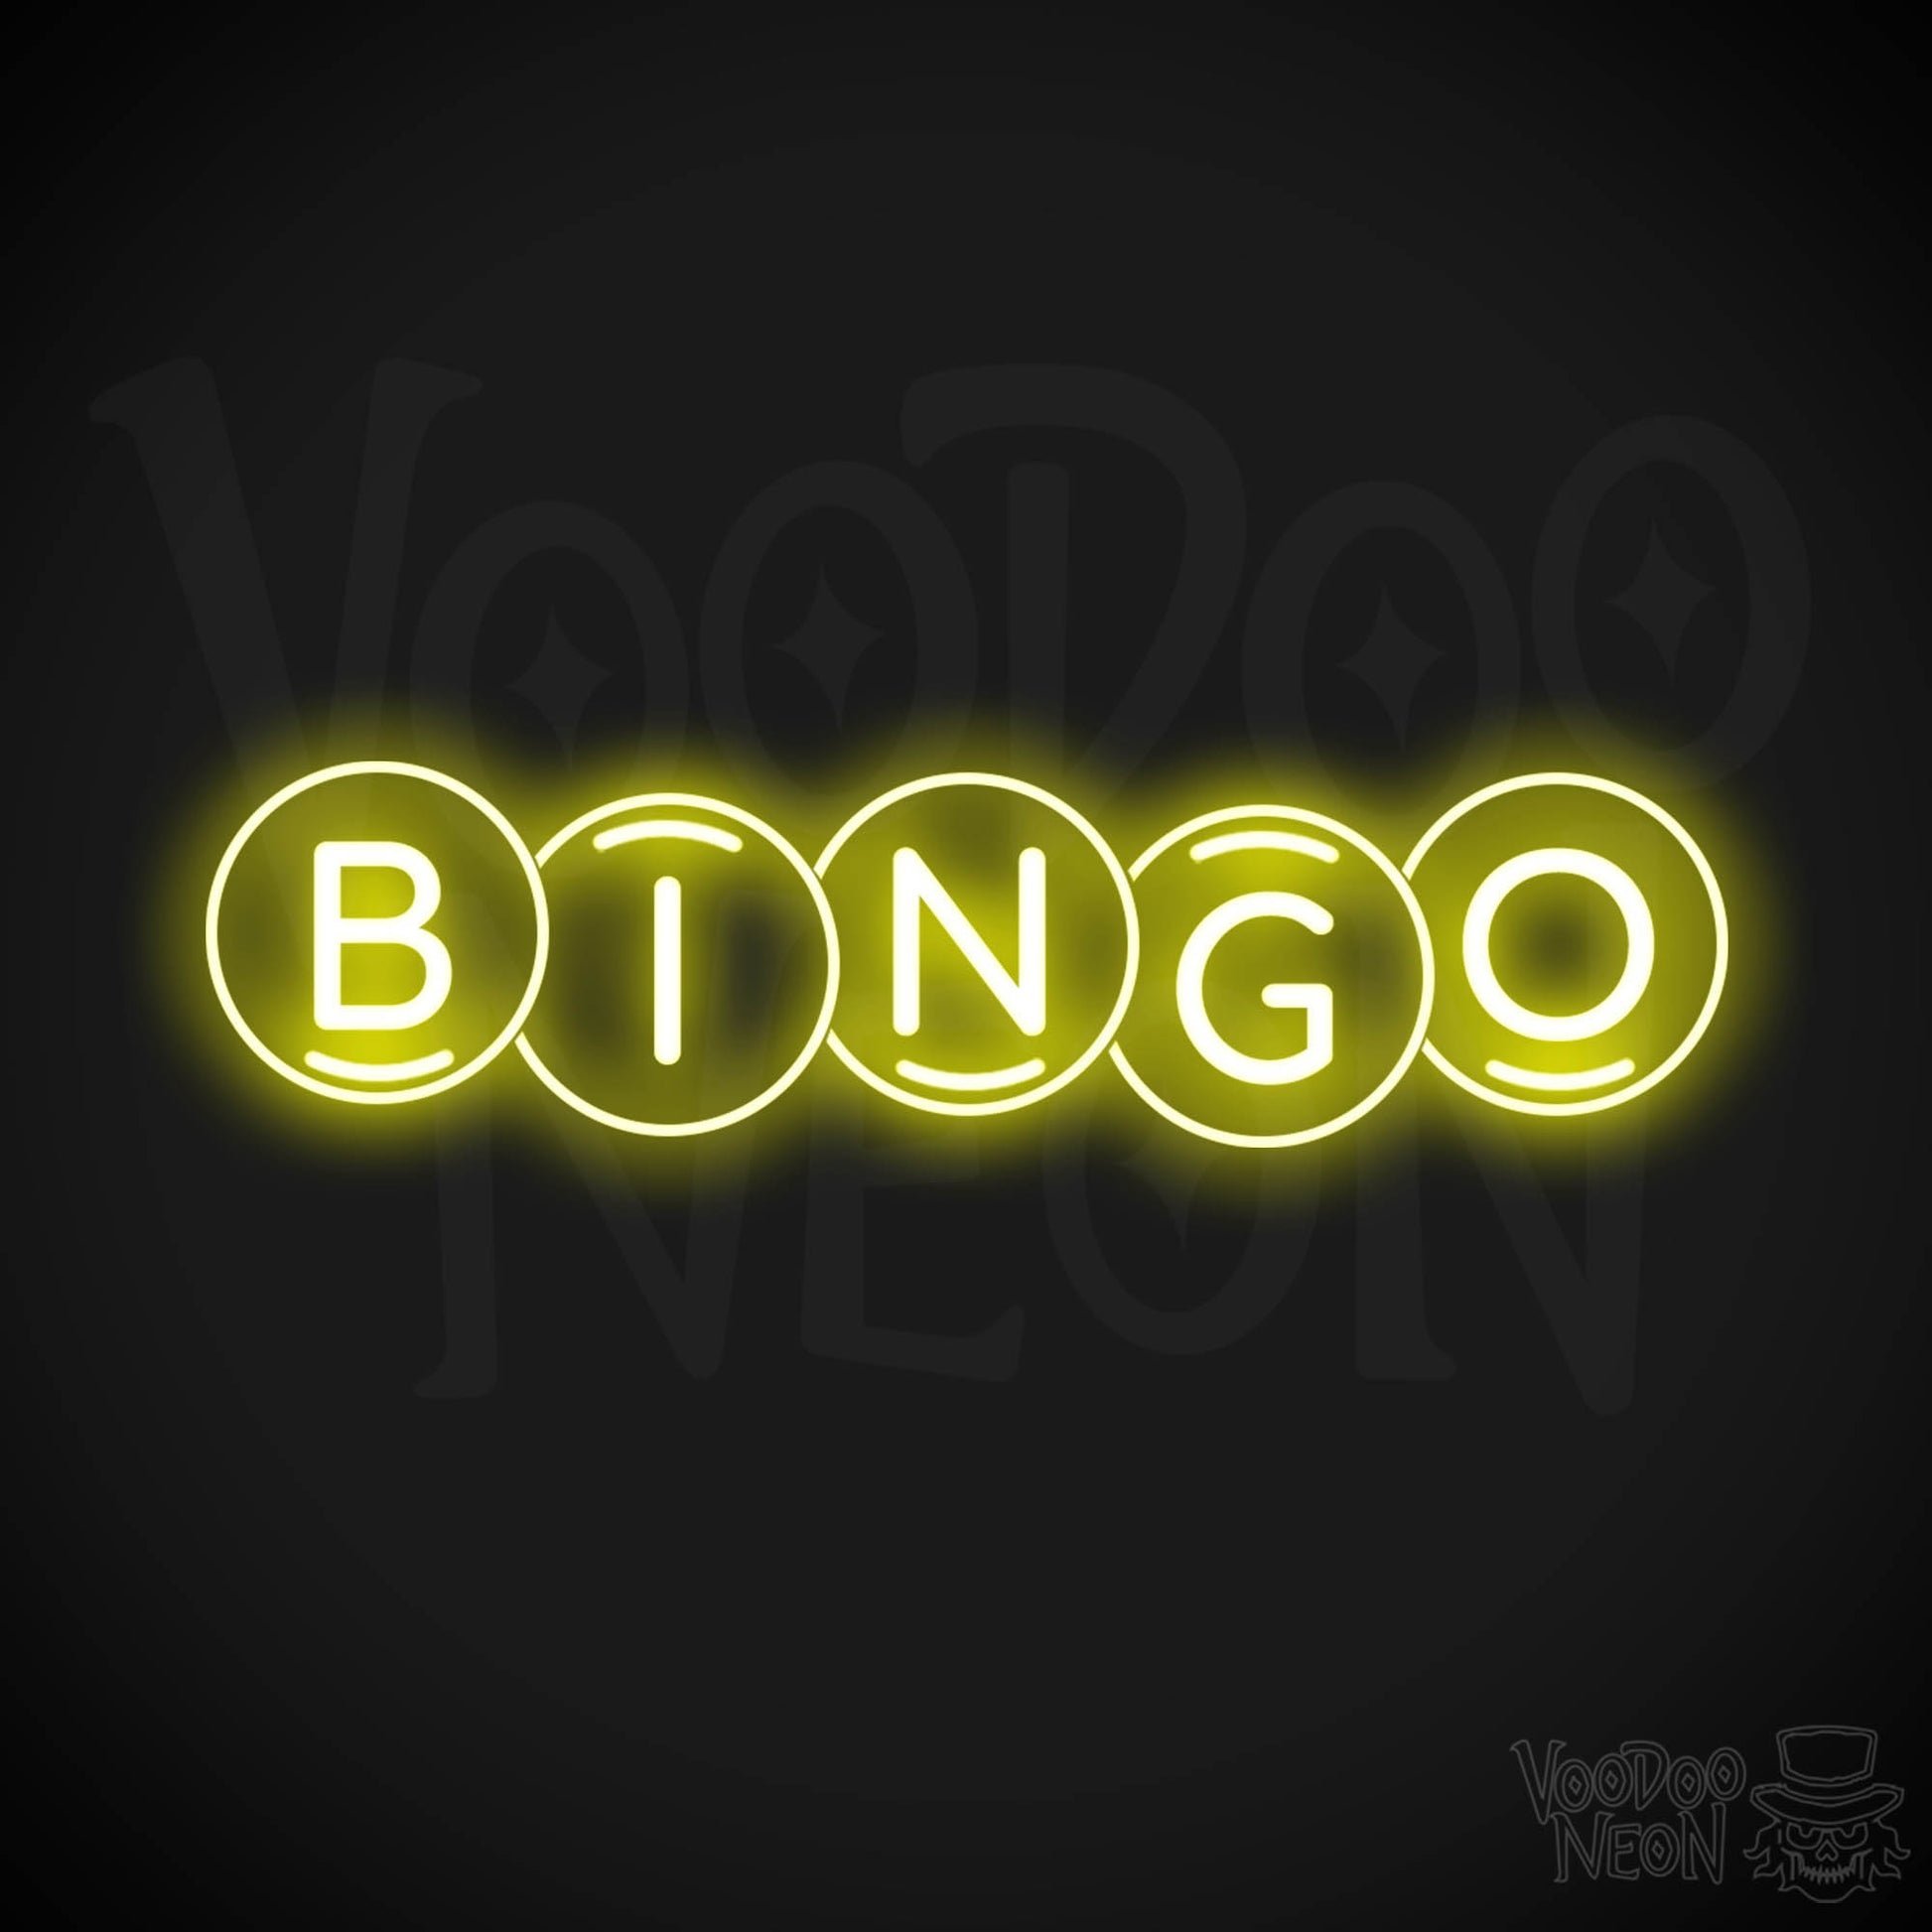 Bingo Neon Sign - Bingo Sign - Wall Art - Color Yellow